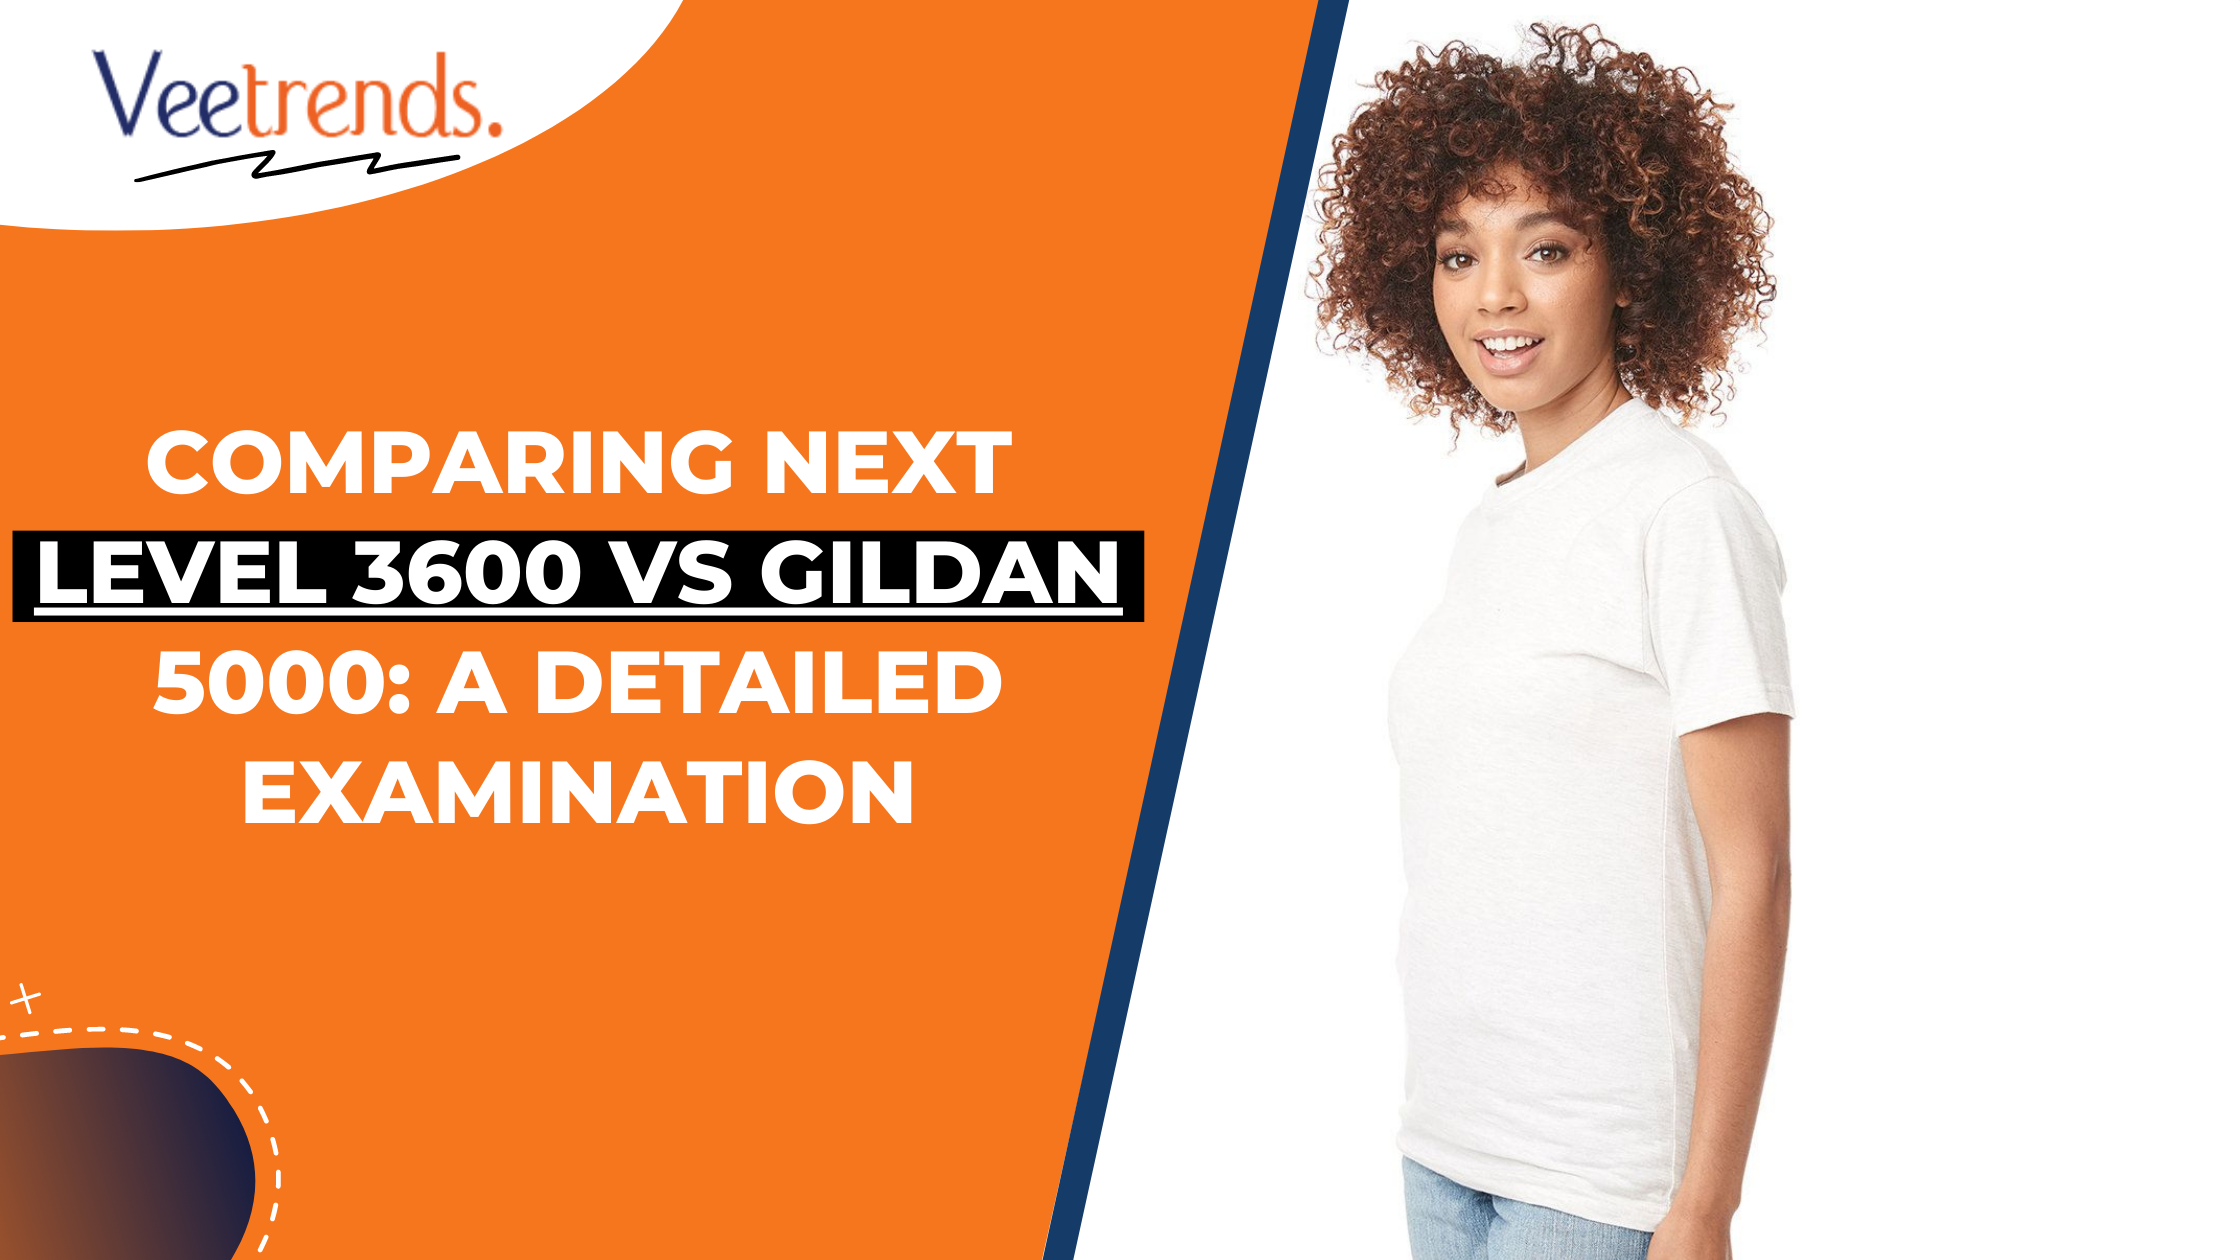 Gildan 5000 vs. Bella Canvas 3001: The Ultimate T-Shirt Comparison